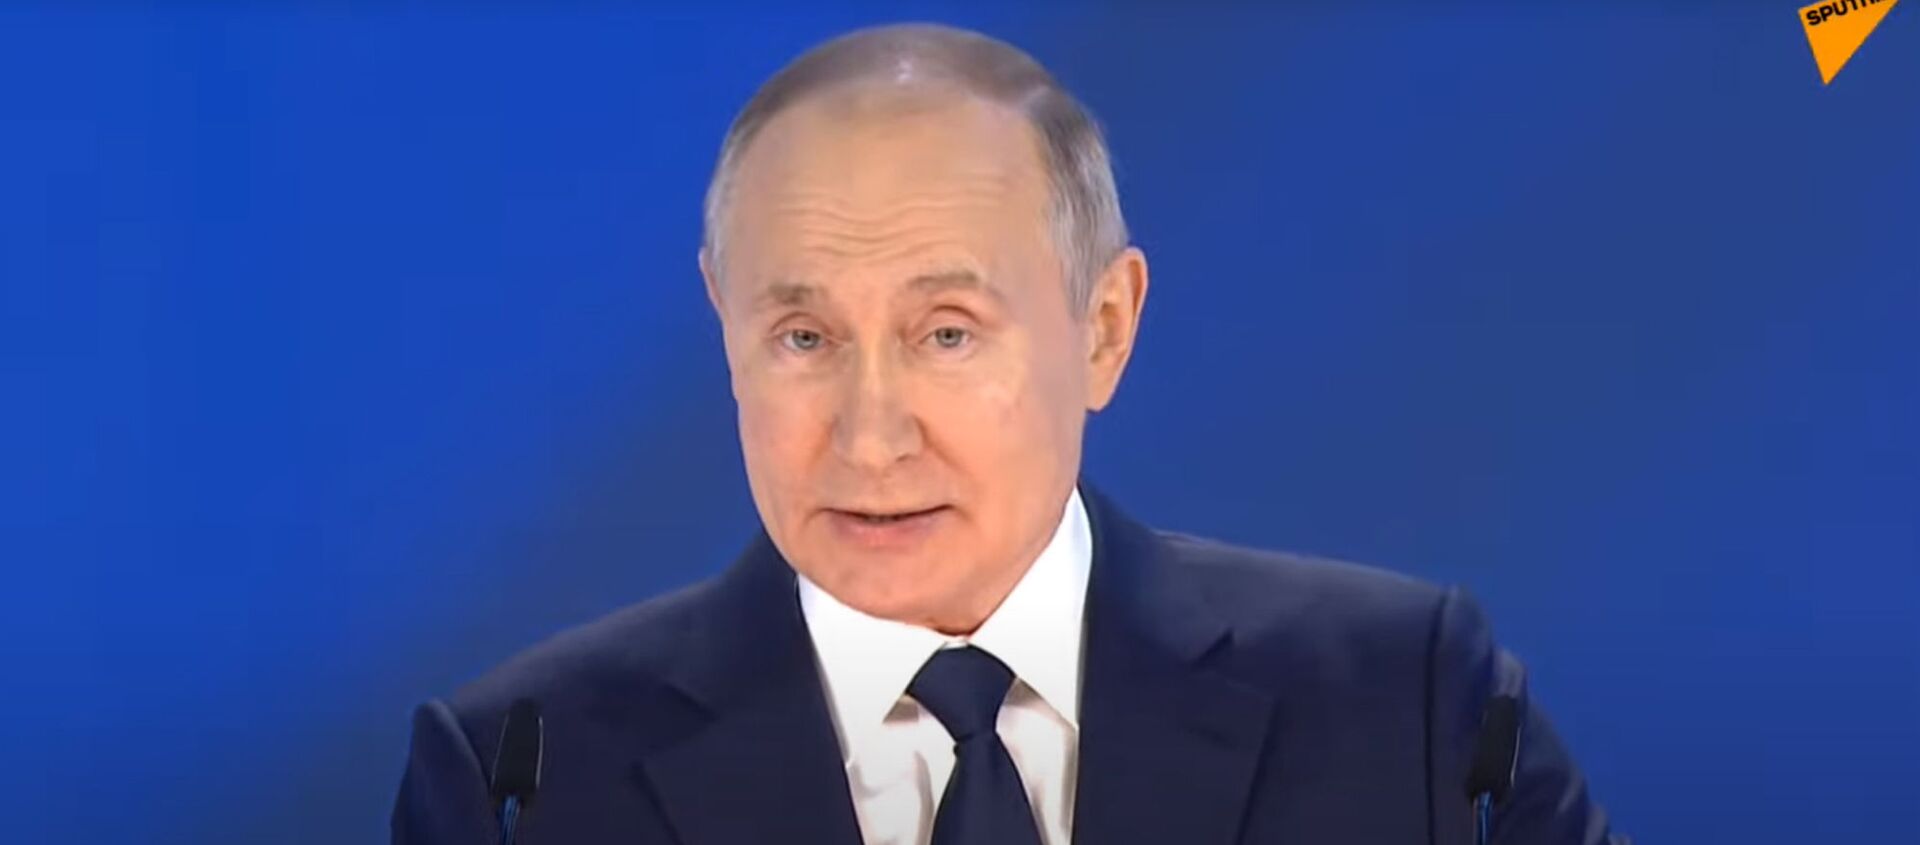 Путин оглашает ежегодное послание Федеральному собранию — запись прямого эфира - Sputnik Кыргызстан, 1920, 21.04.2021